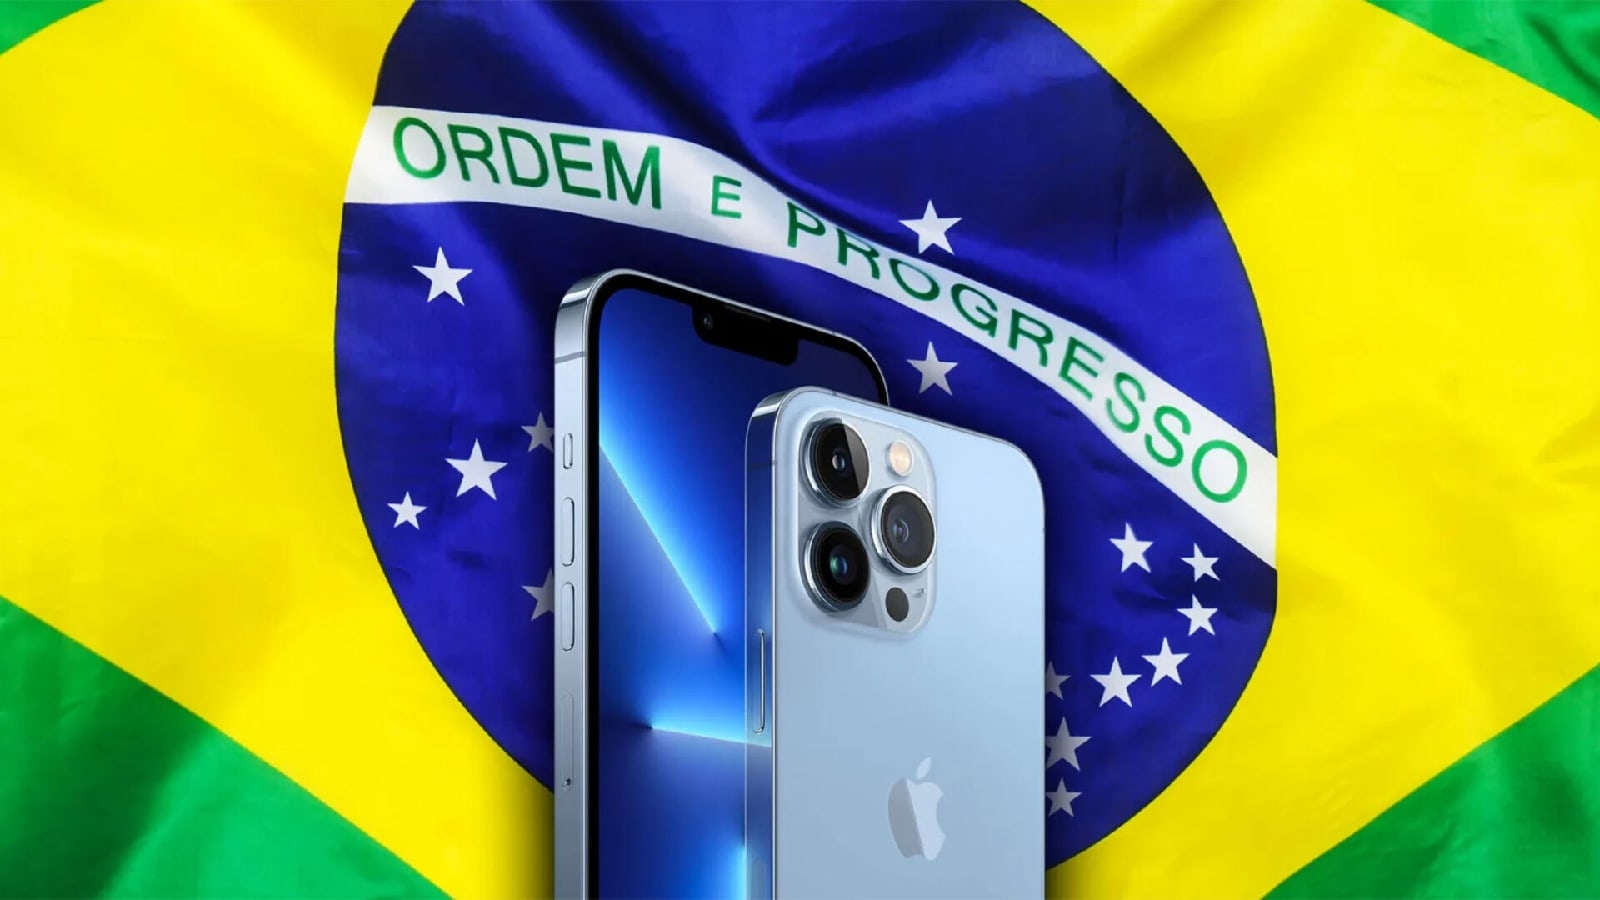 Суд Бразилии запретил продажи всех моделей iPhone, выпущенных с 2020 года, начиная с двенадцато1 модели, по причине отсутствия в комплекте зарядного устройства.